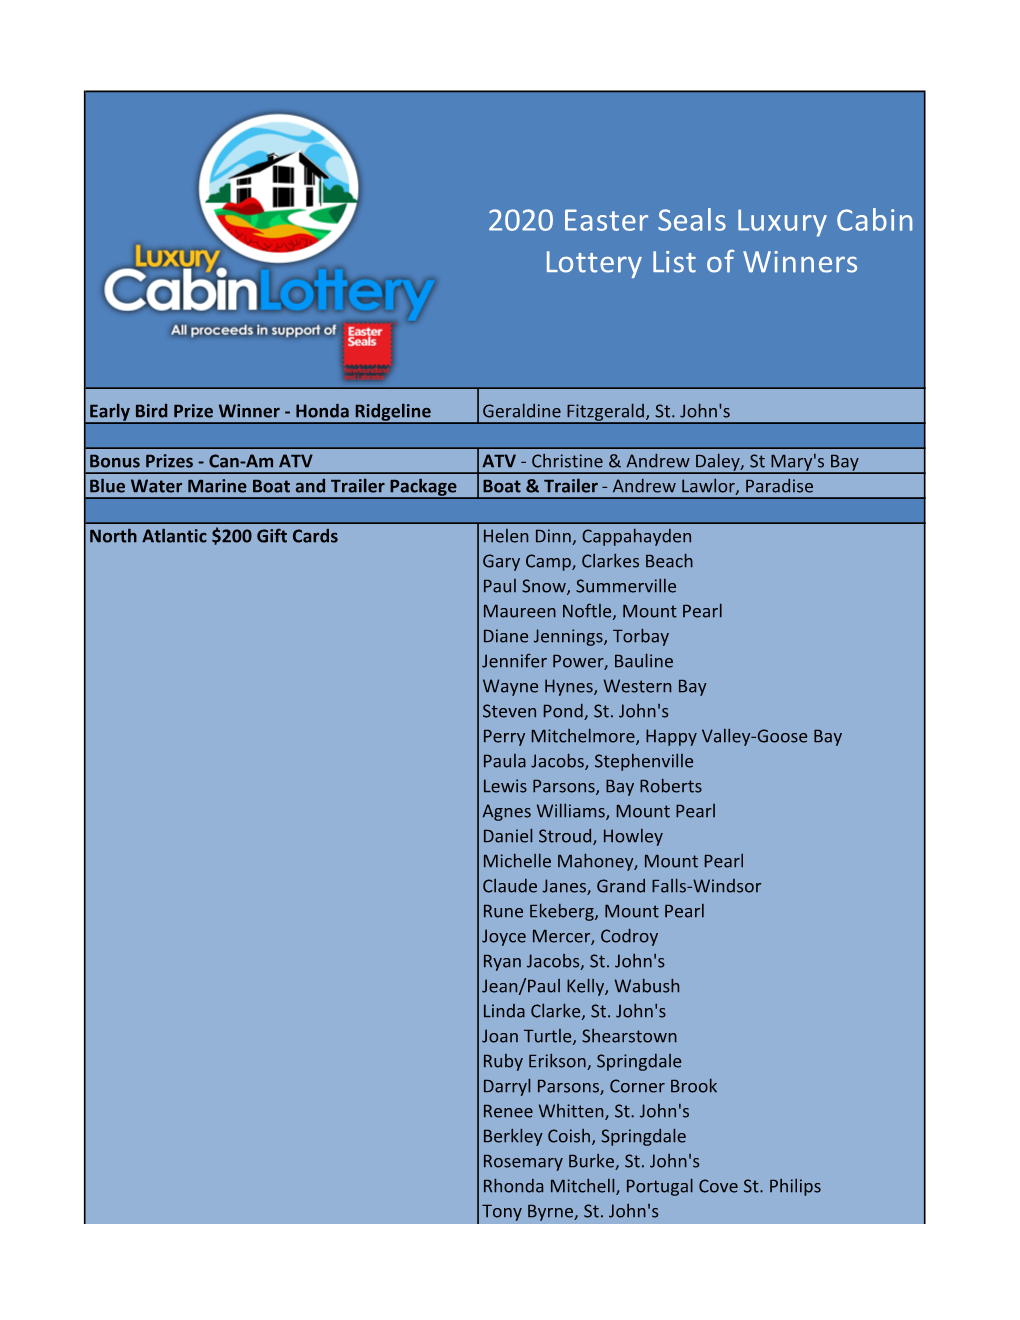 2020 Easter Seals Luxury Cabin Lottery List of Winners